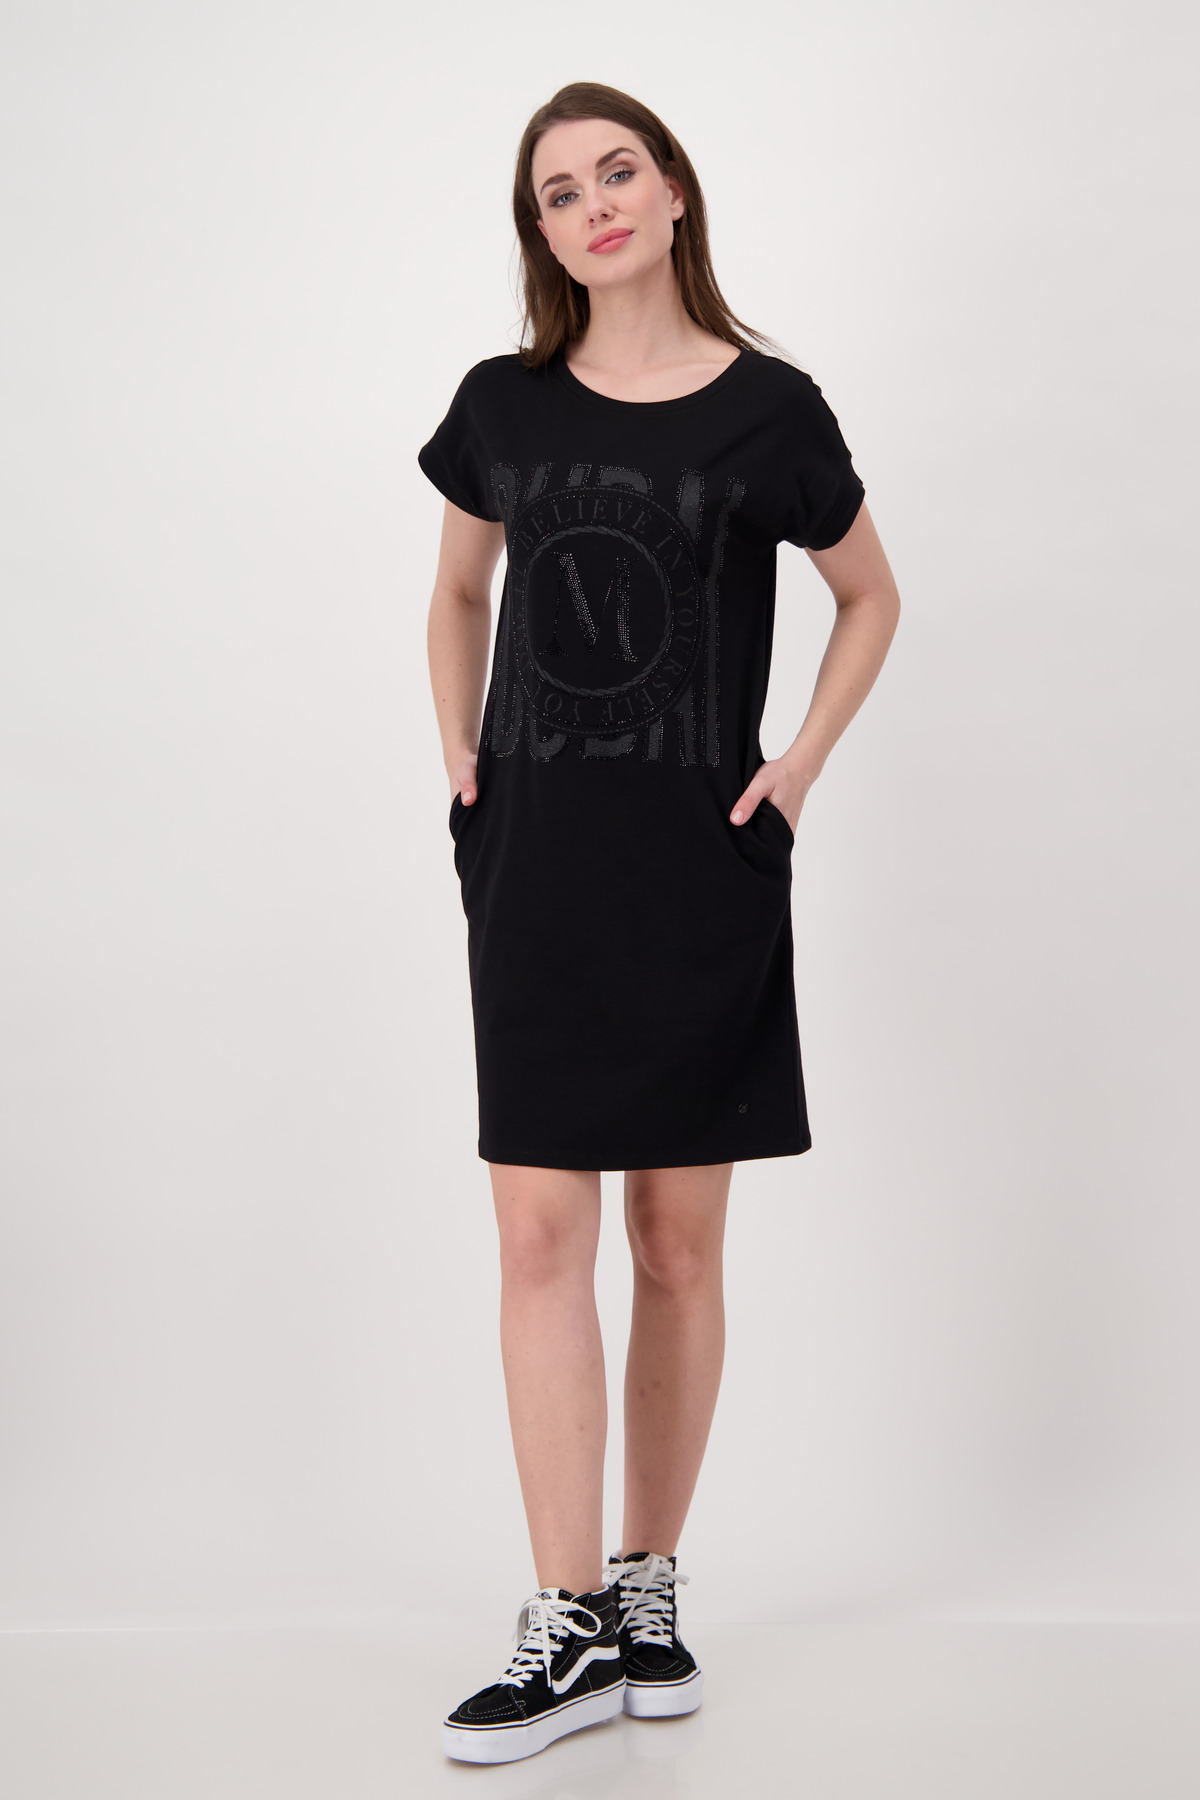 Monari Kleid, Shop Hartmann - schwarz Mode